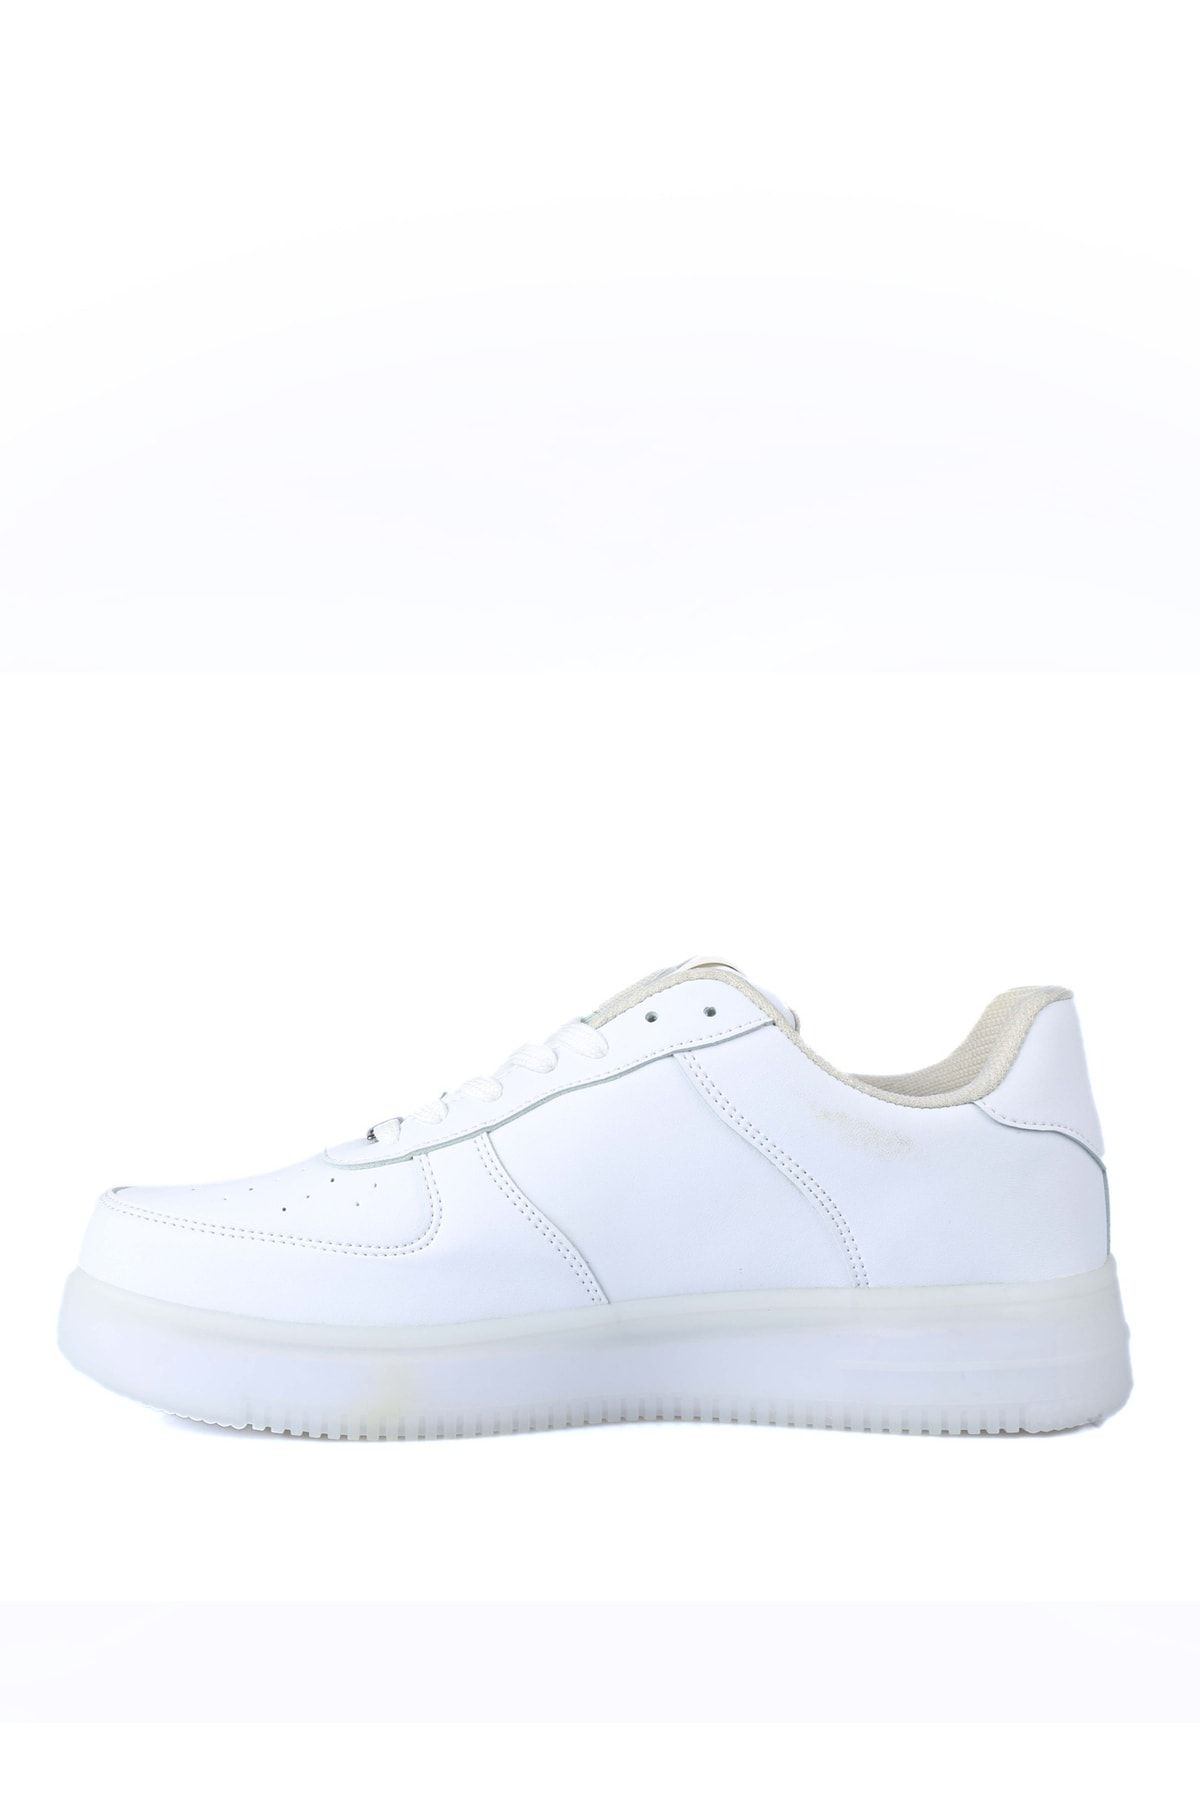 Dunlop Beyaz Erkek Lifestyle Ayakkabı Dnp-2266